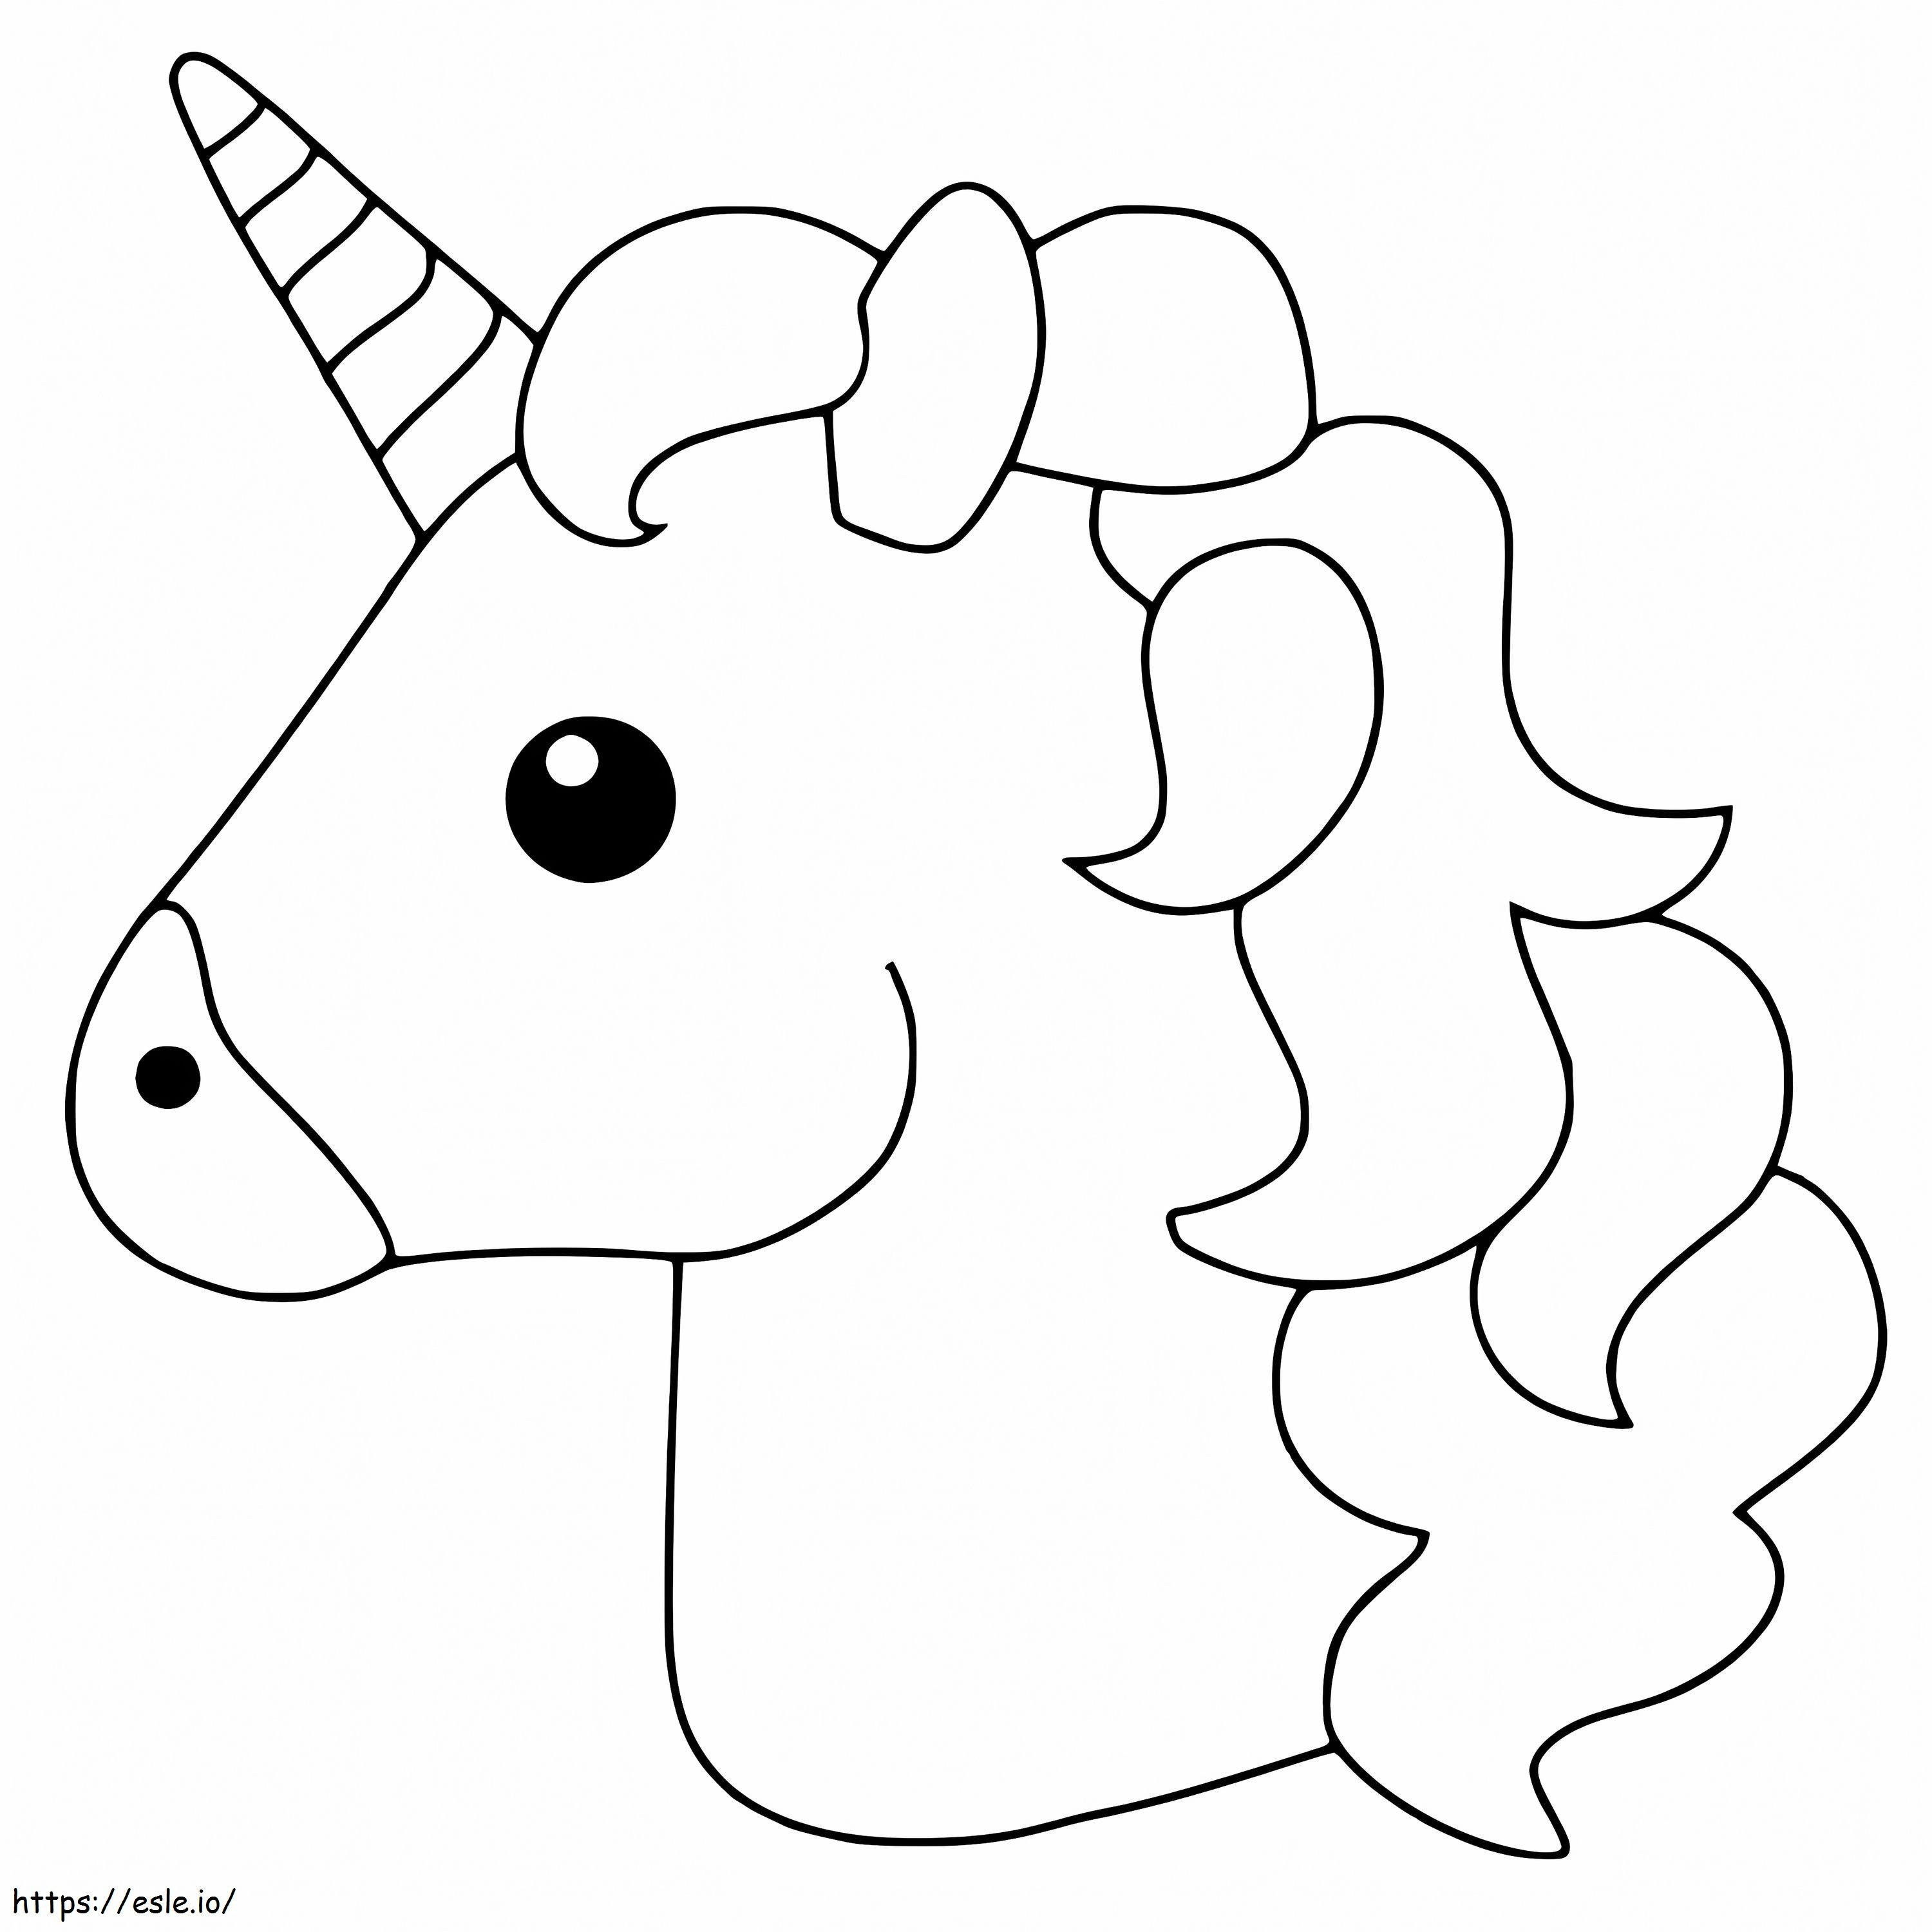 1545875069 Christmas Emoji With Unicorn Color Page Printable Free coloring page